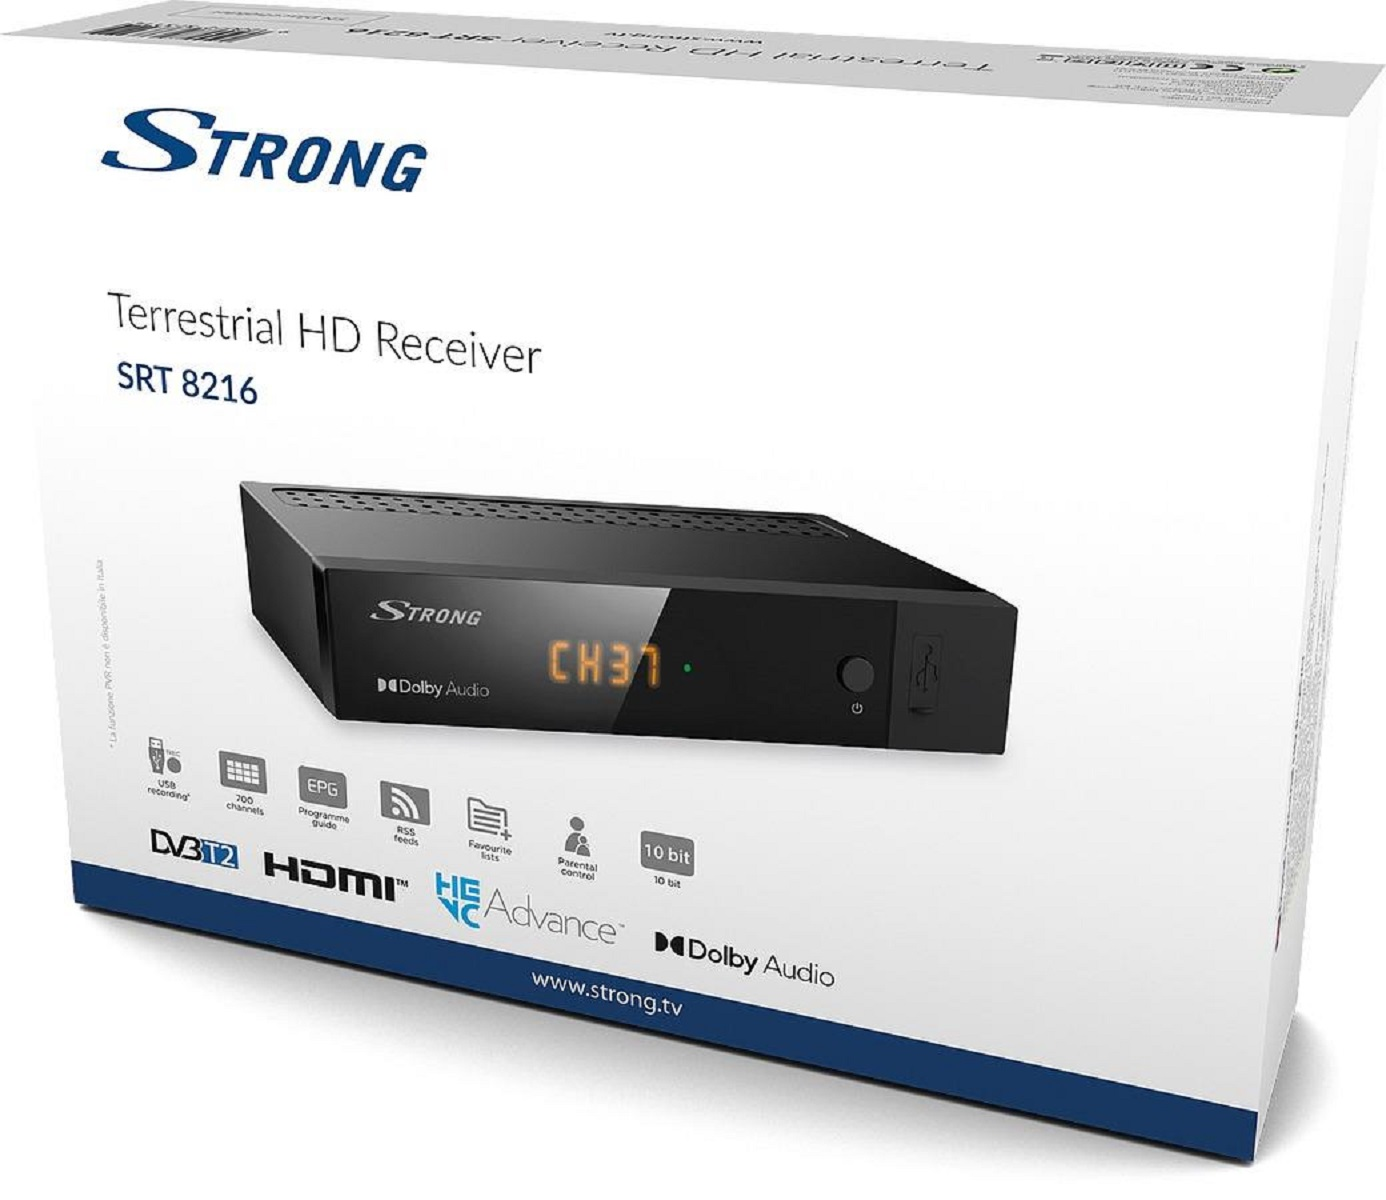 HD 8216 SRT Receiver STRONG (DVB-T2 schwarz) Terrestrischer (H.265),